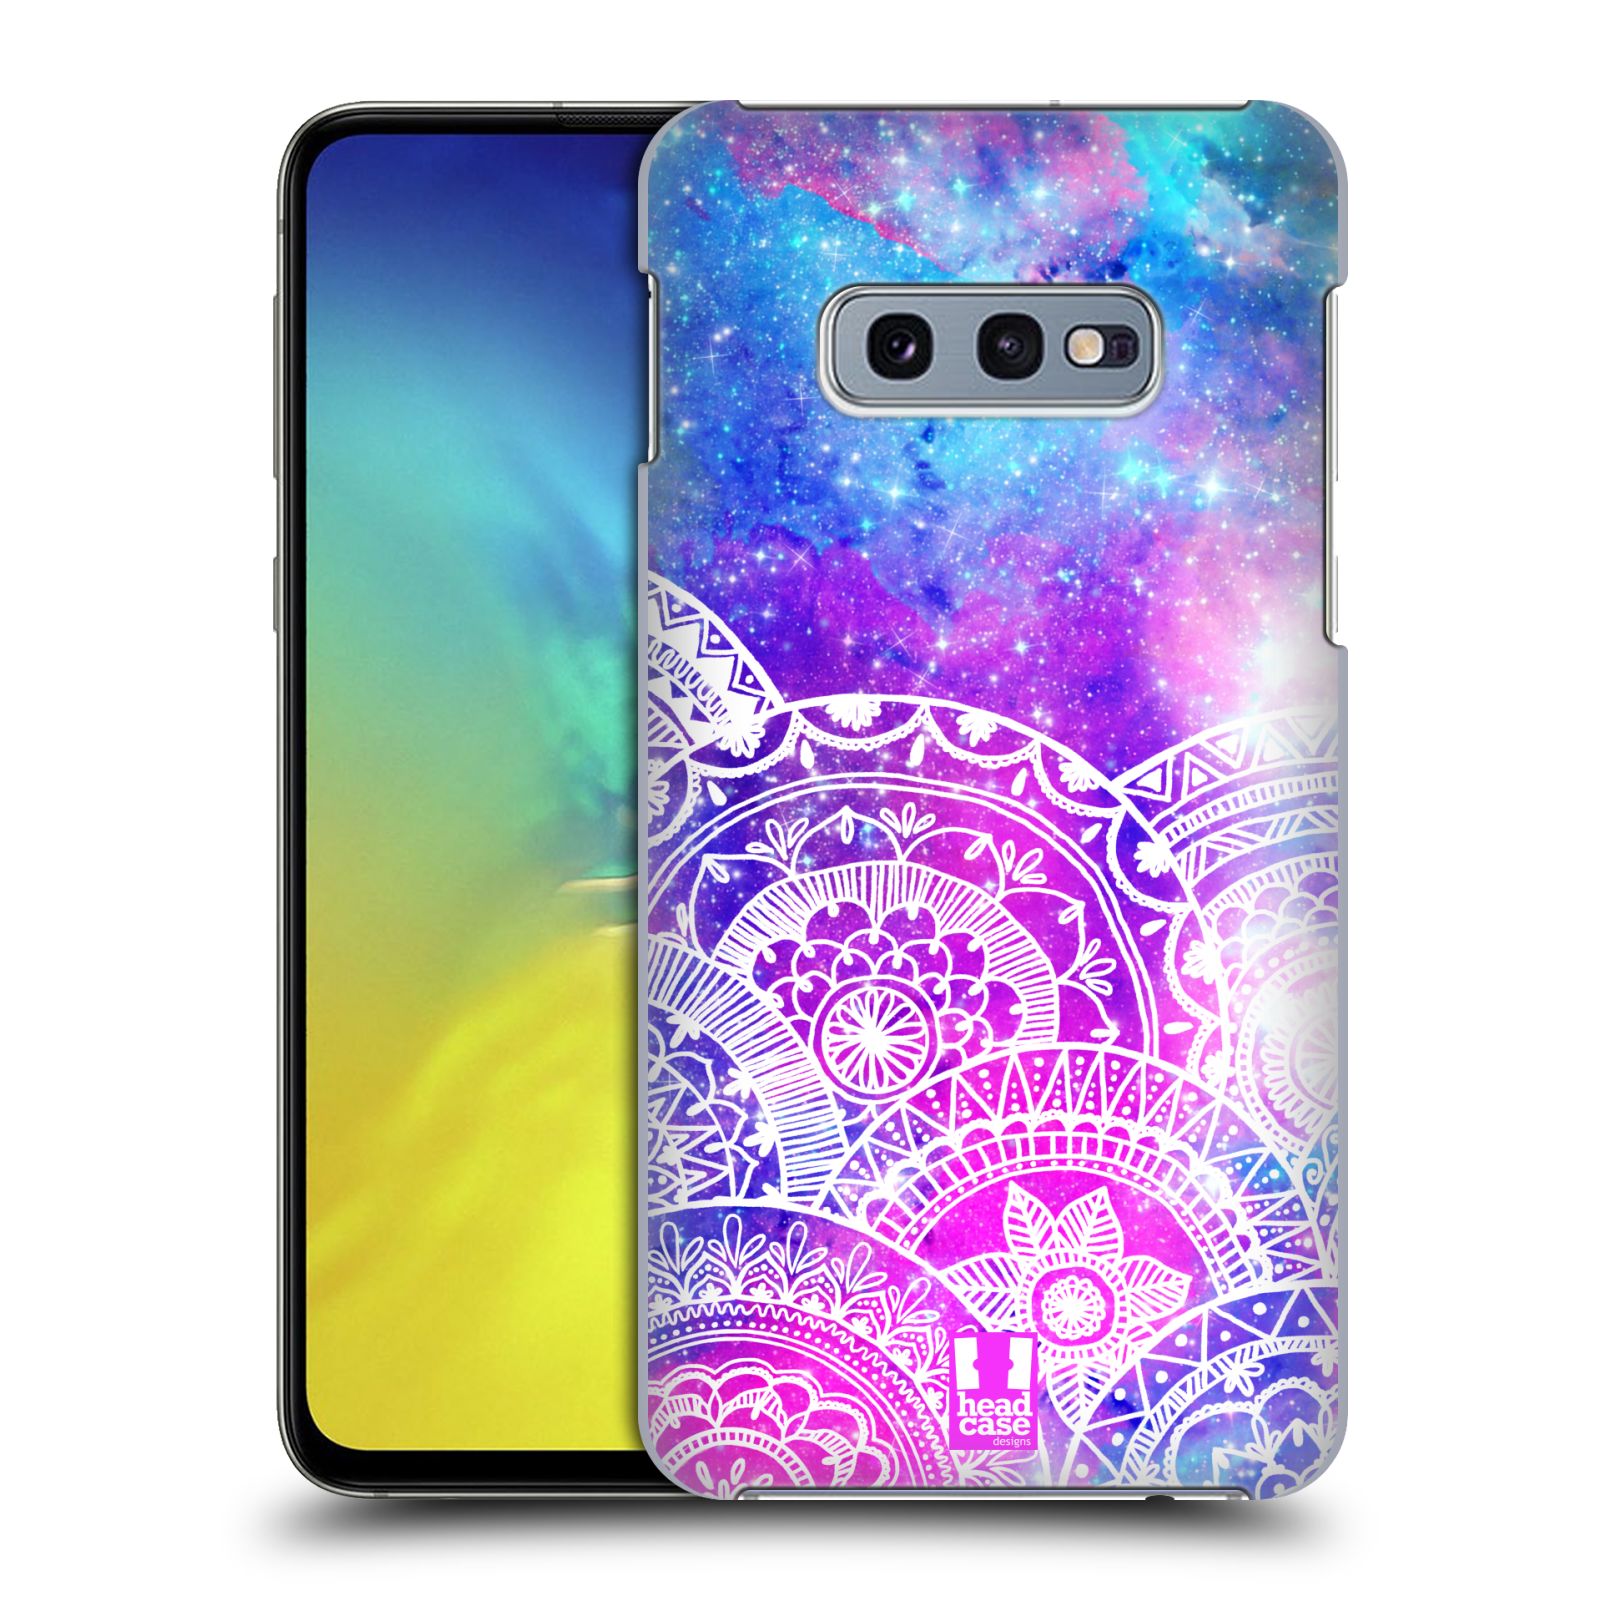 Pouzdro na mobil Samsung Galaxy S10e - HEAD CASE - Mandala nekonečná galaxie